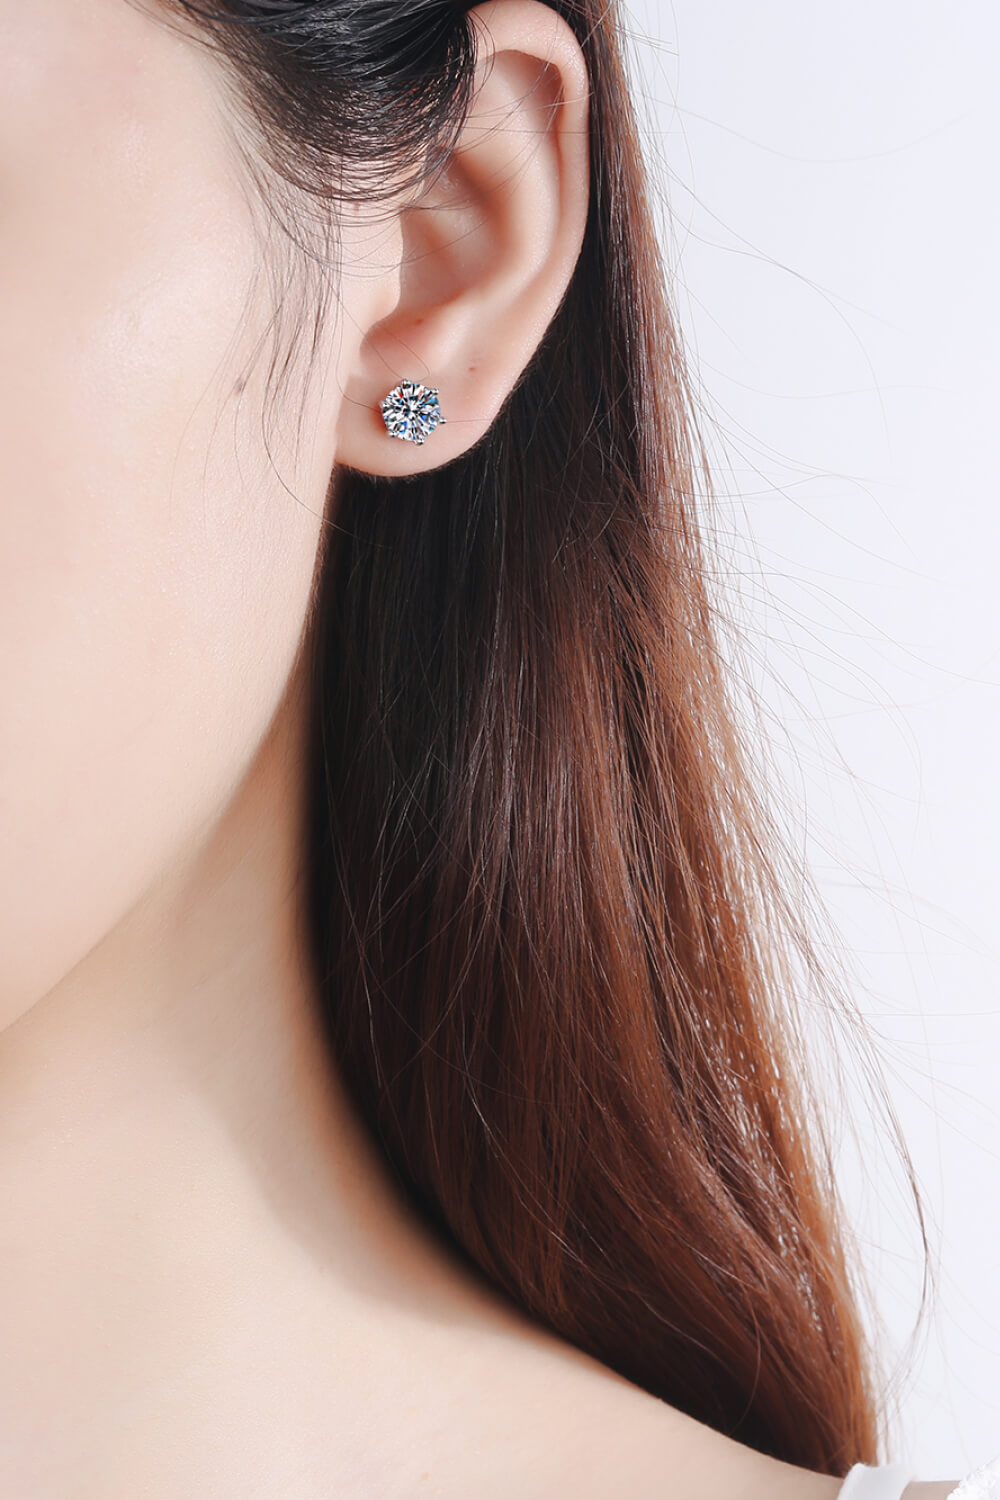 Adored Moissanite Stud Earrings - Tophatter Deals